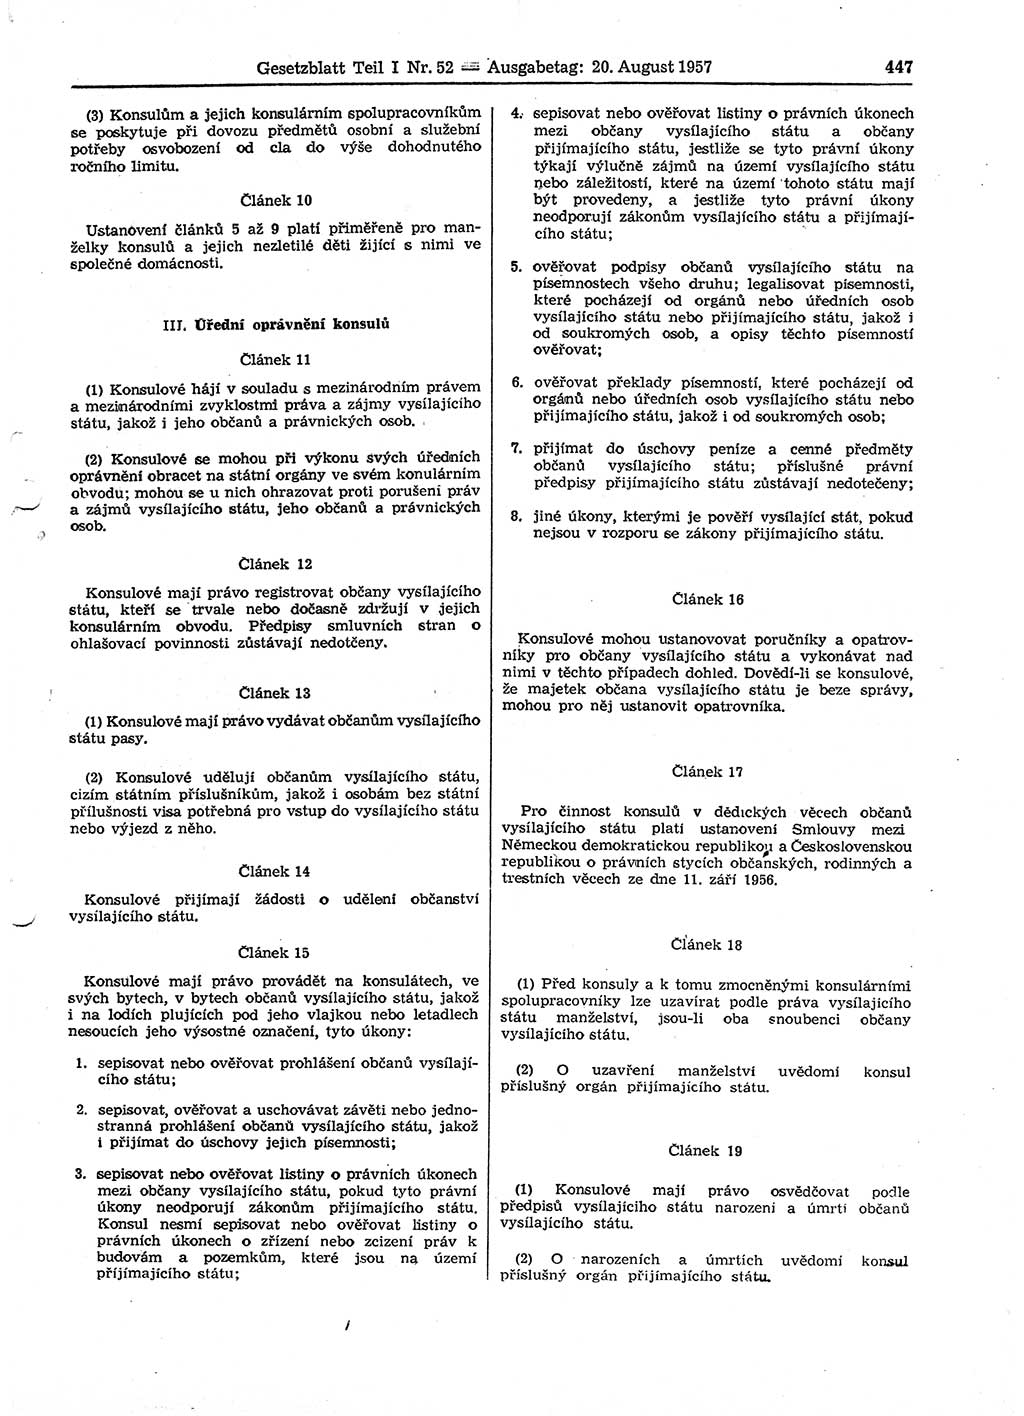 Gesetzblatt (GBl.) der Deutschen Demokratischen Republik (DDR) Teil Ⅰ 1957, Seite 447 (GBl. DDR Ⅰ 1957, S. 447)